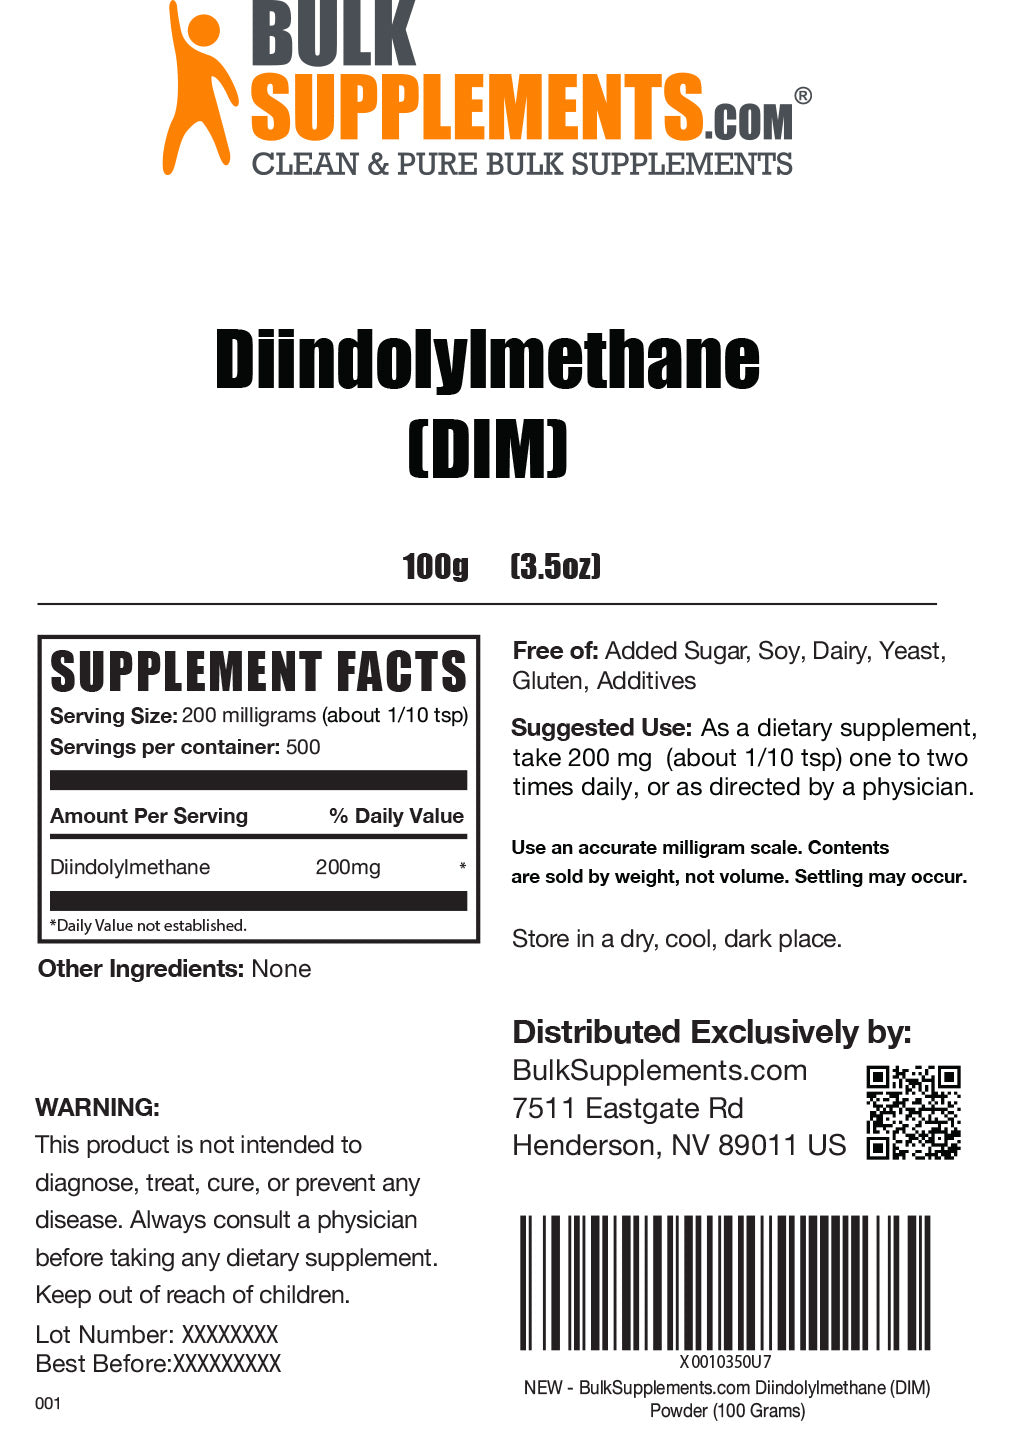 Diindolylmethane (DIM) Powder